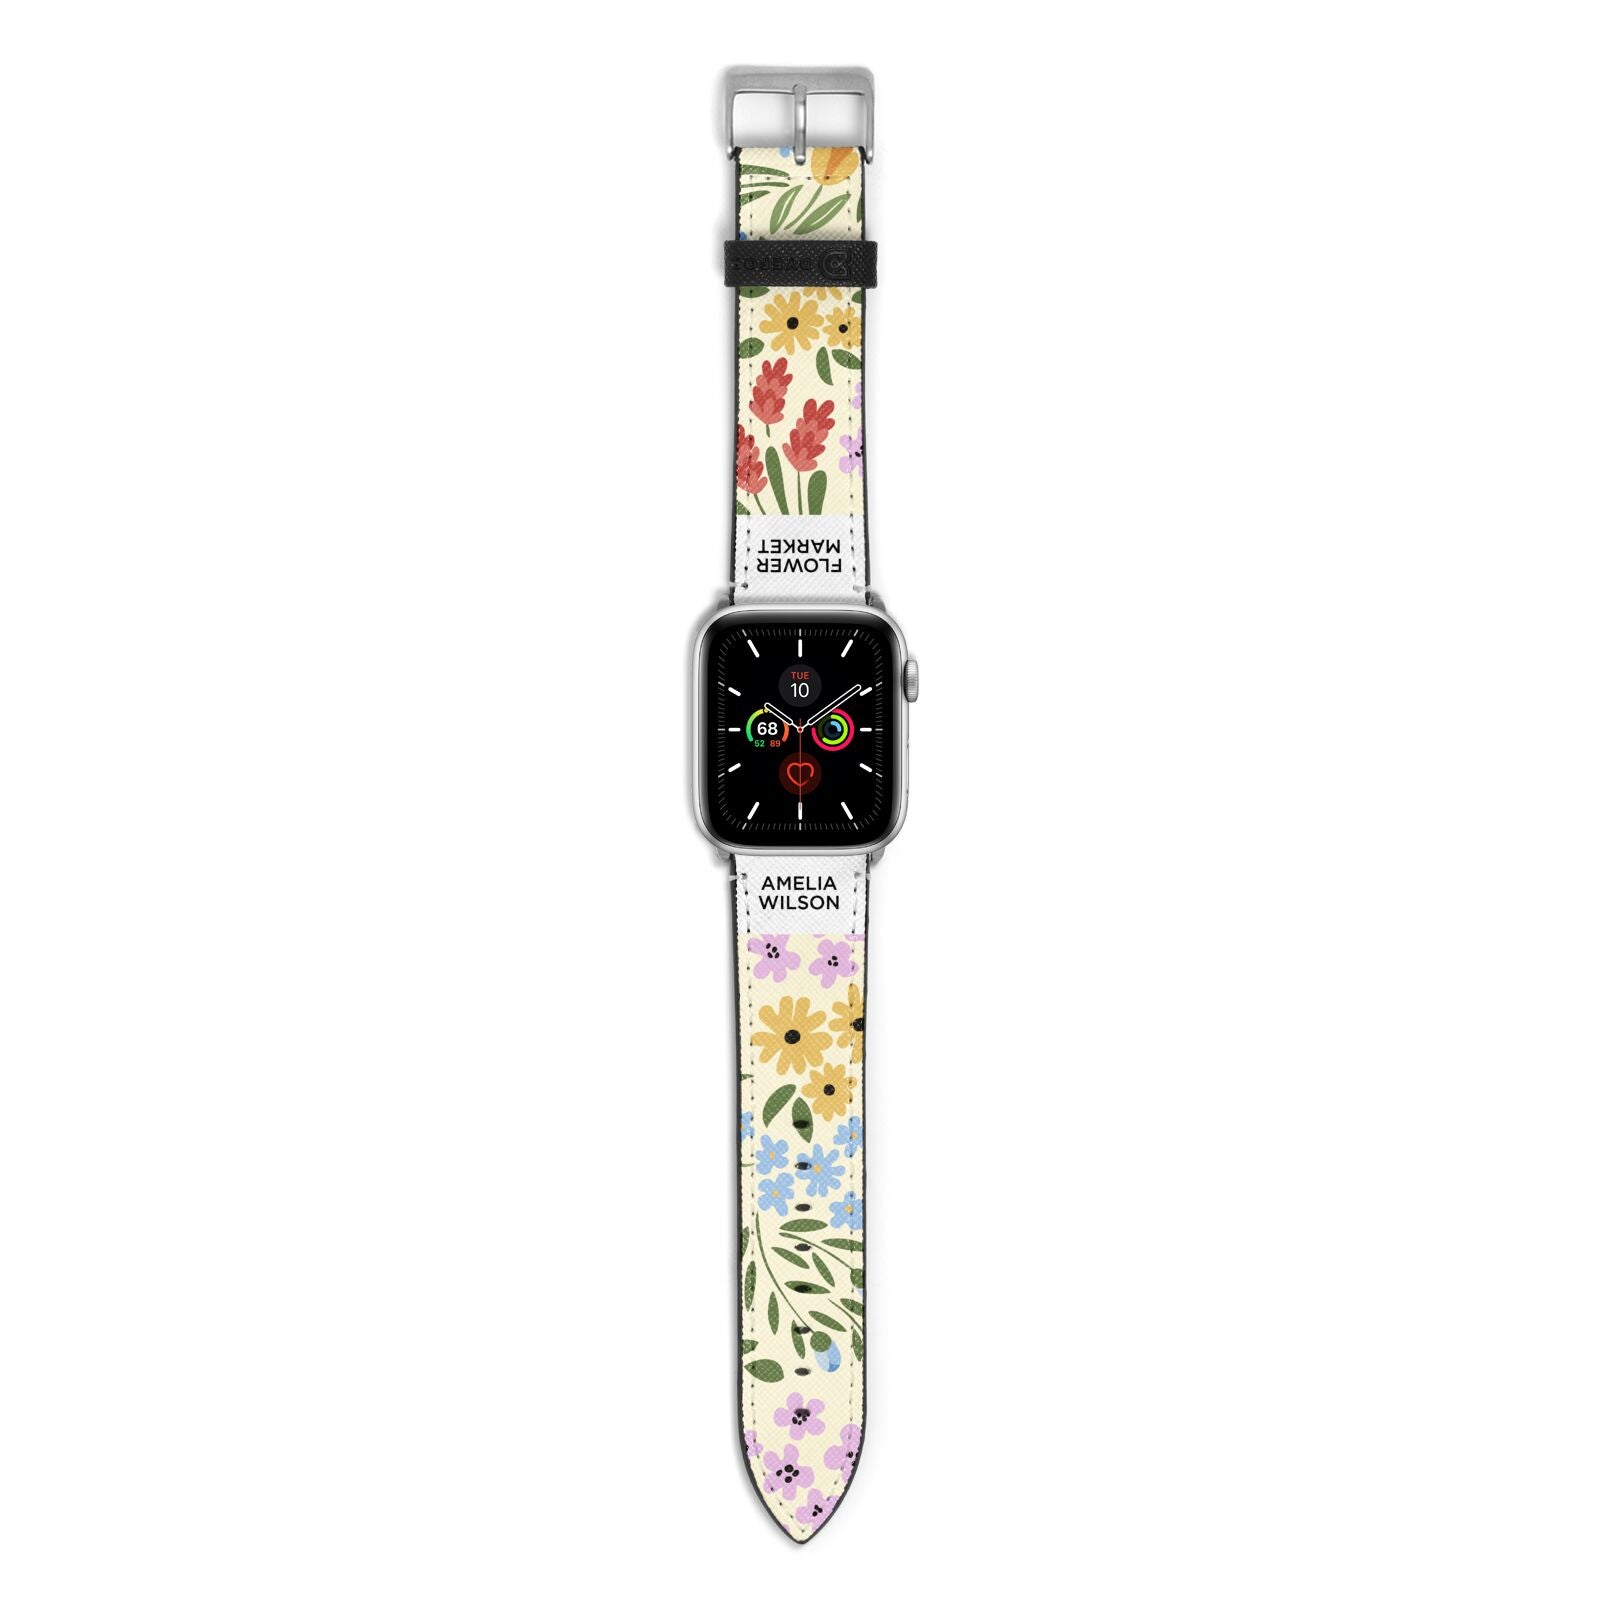 Paris Flower Market Apple Watch Strap with Silver Hardware